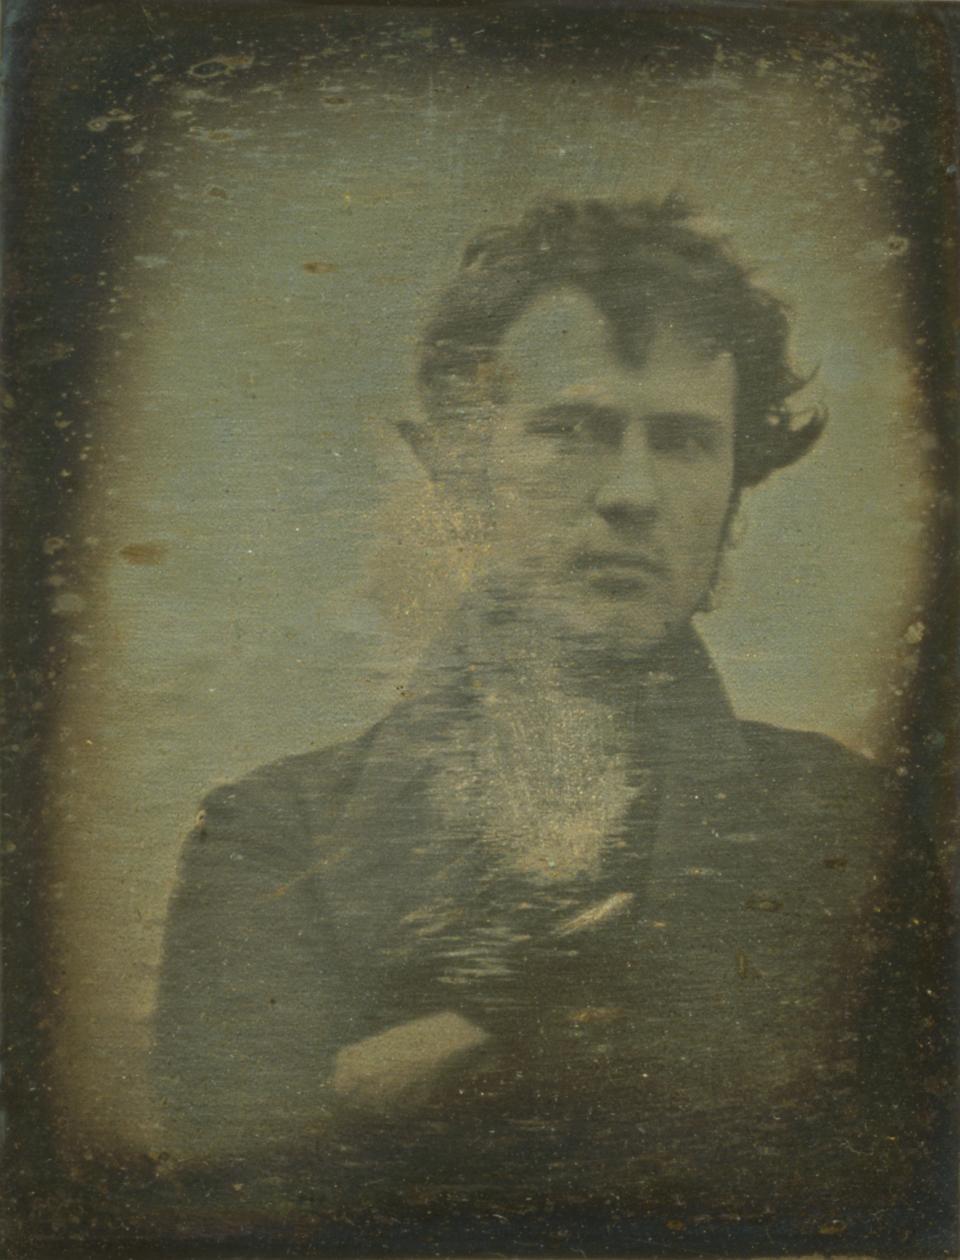 Se cree que este daguerrotipo realizado por Robert Cornelius en 1839 es el primer autorretrato fotográfico, y por extensión, la primera selfie, de la historia (Imagen: Wikimedia Commons)